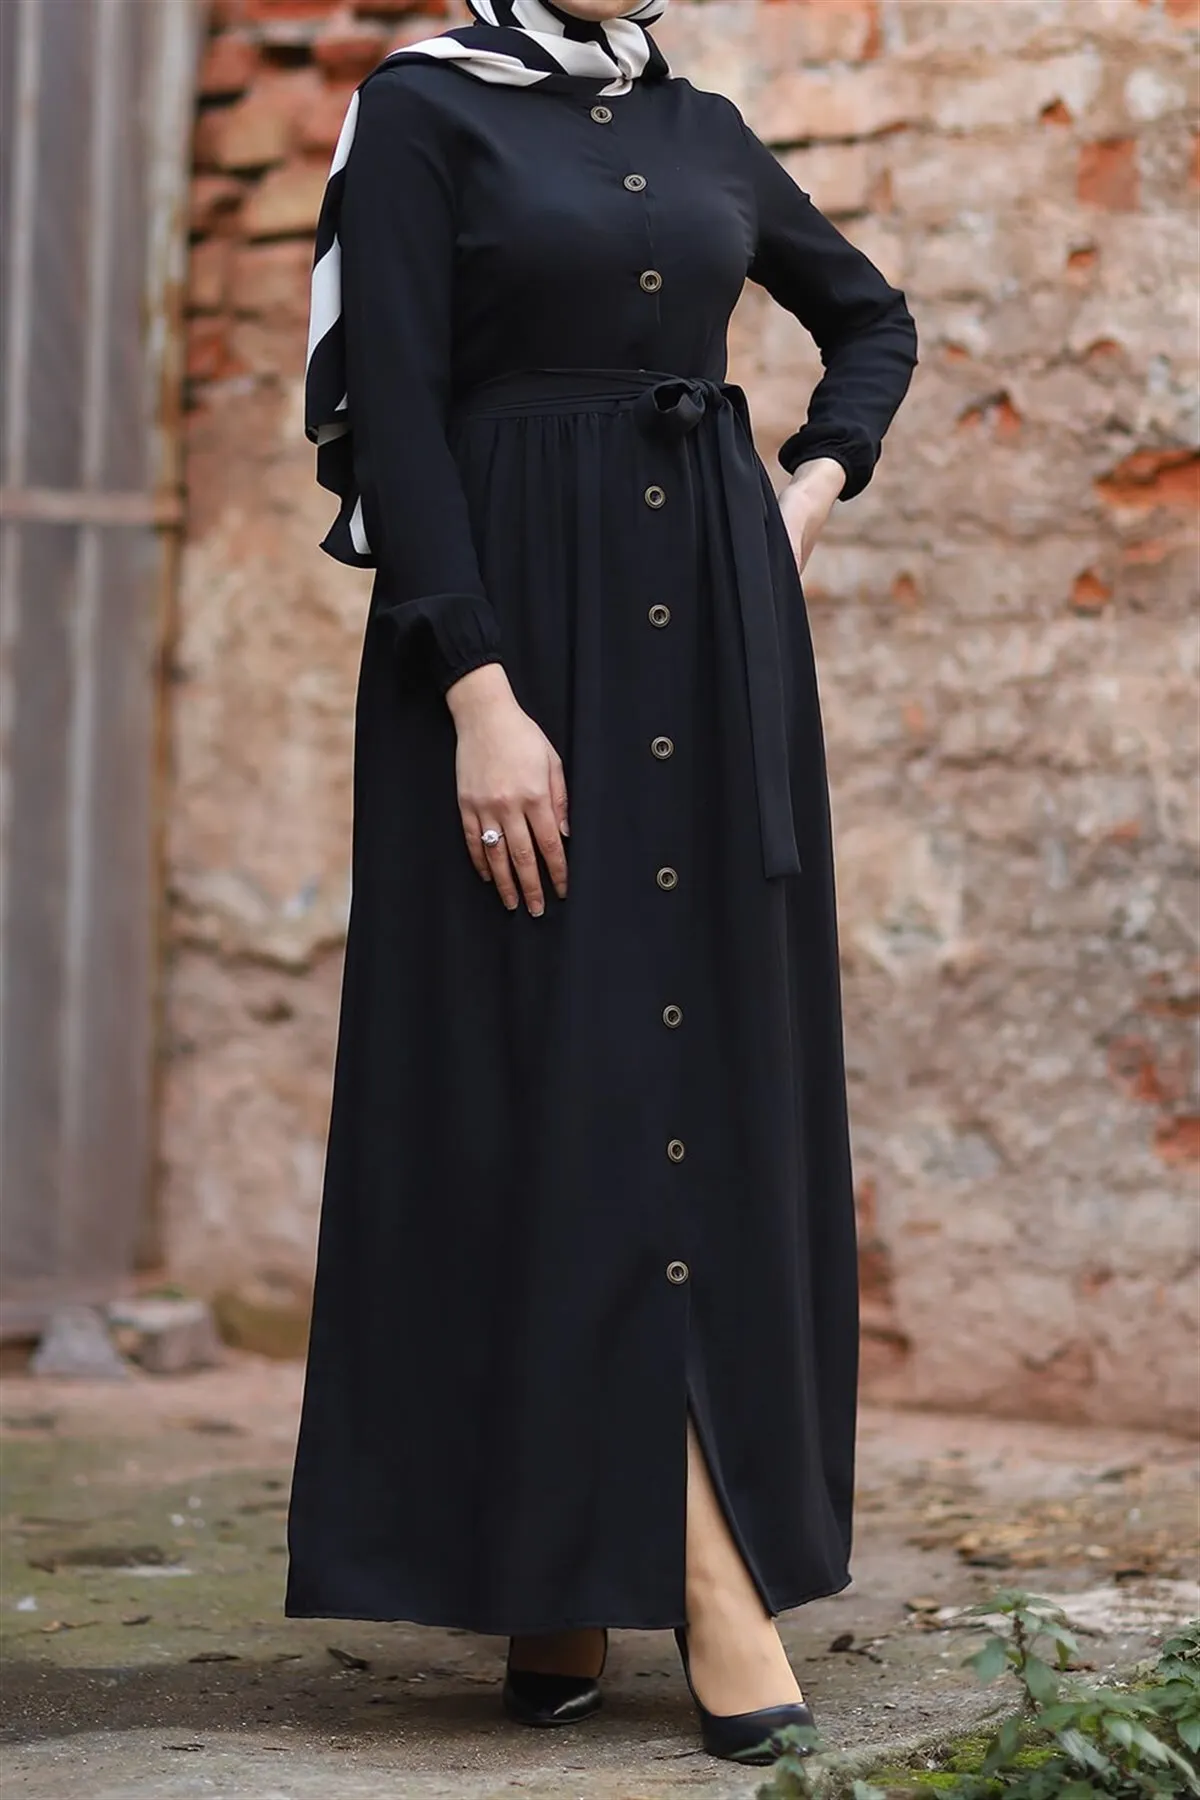 hijab islam vestuário dubai istambul istanbulstyles 2021